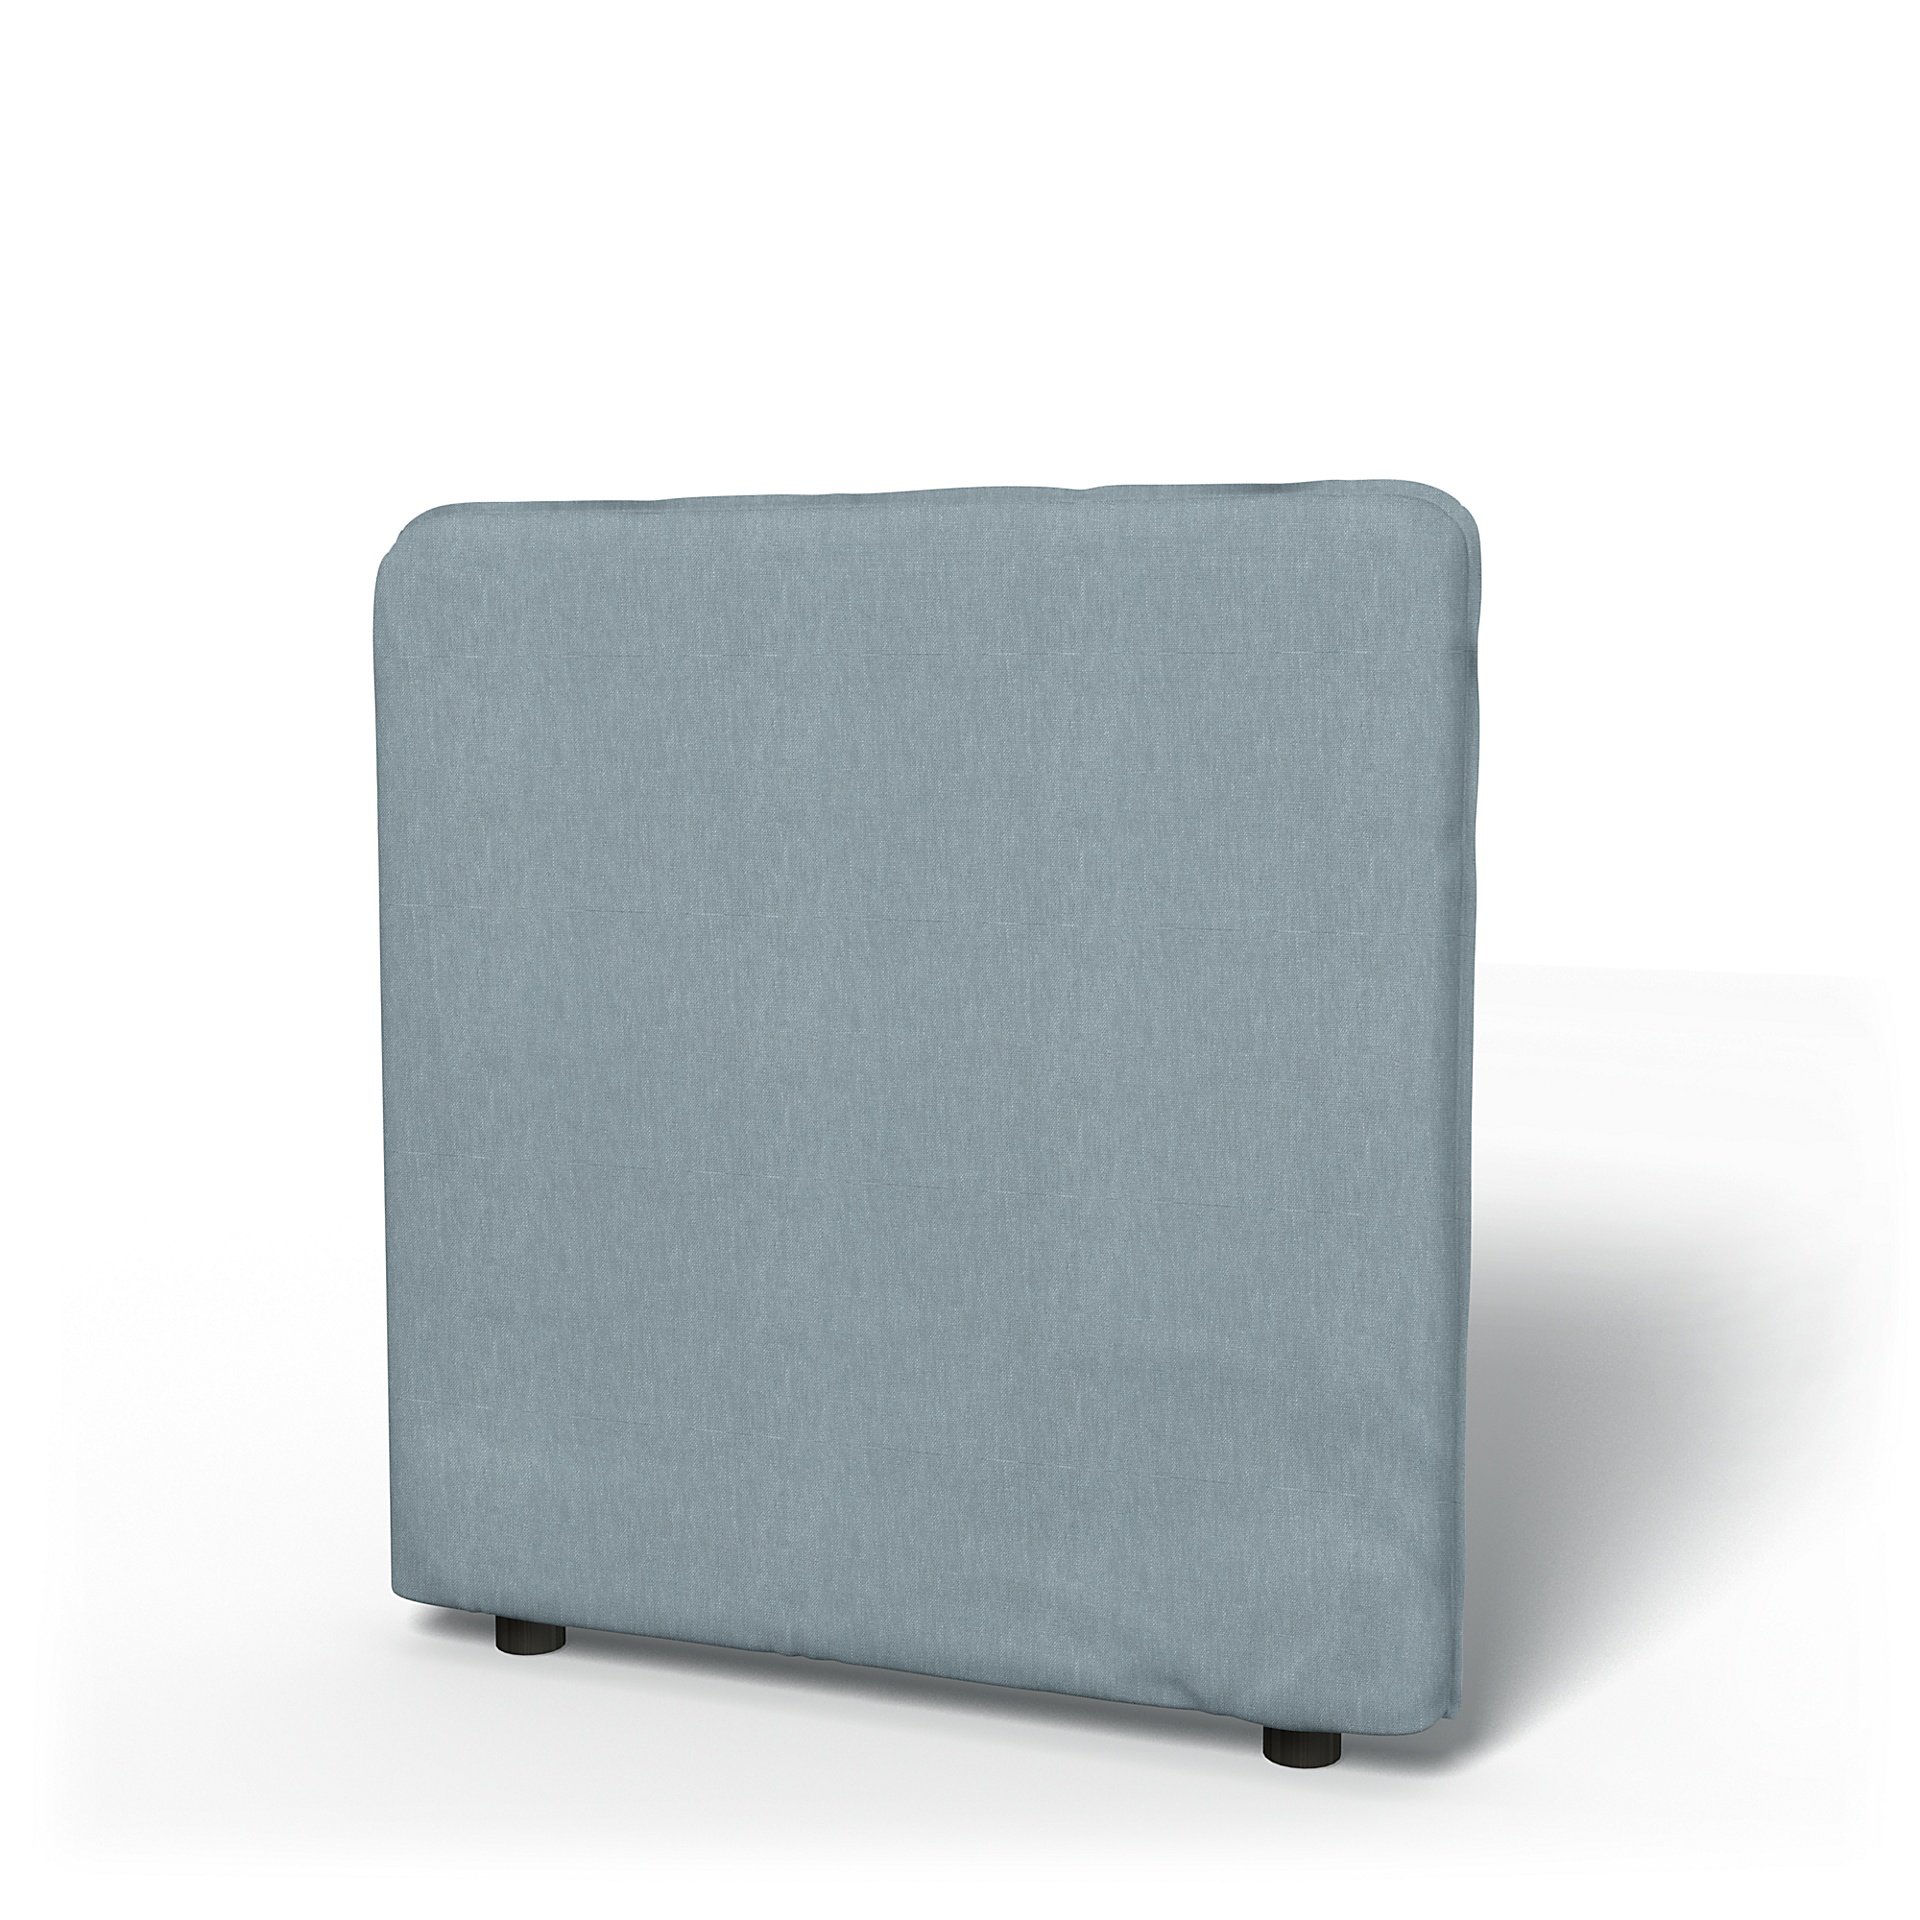 IKEA - Vallentuna Low Backrest Cover 80x80cm 32x32in, Dusty Blue, Linen - Bemz